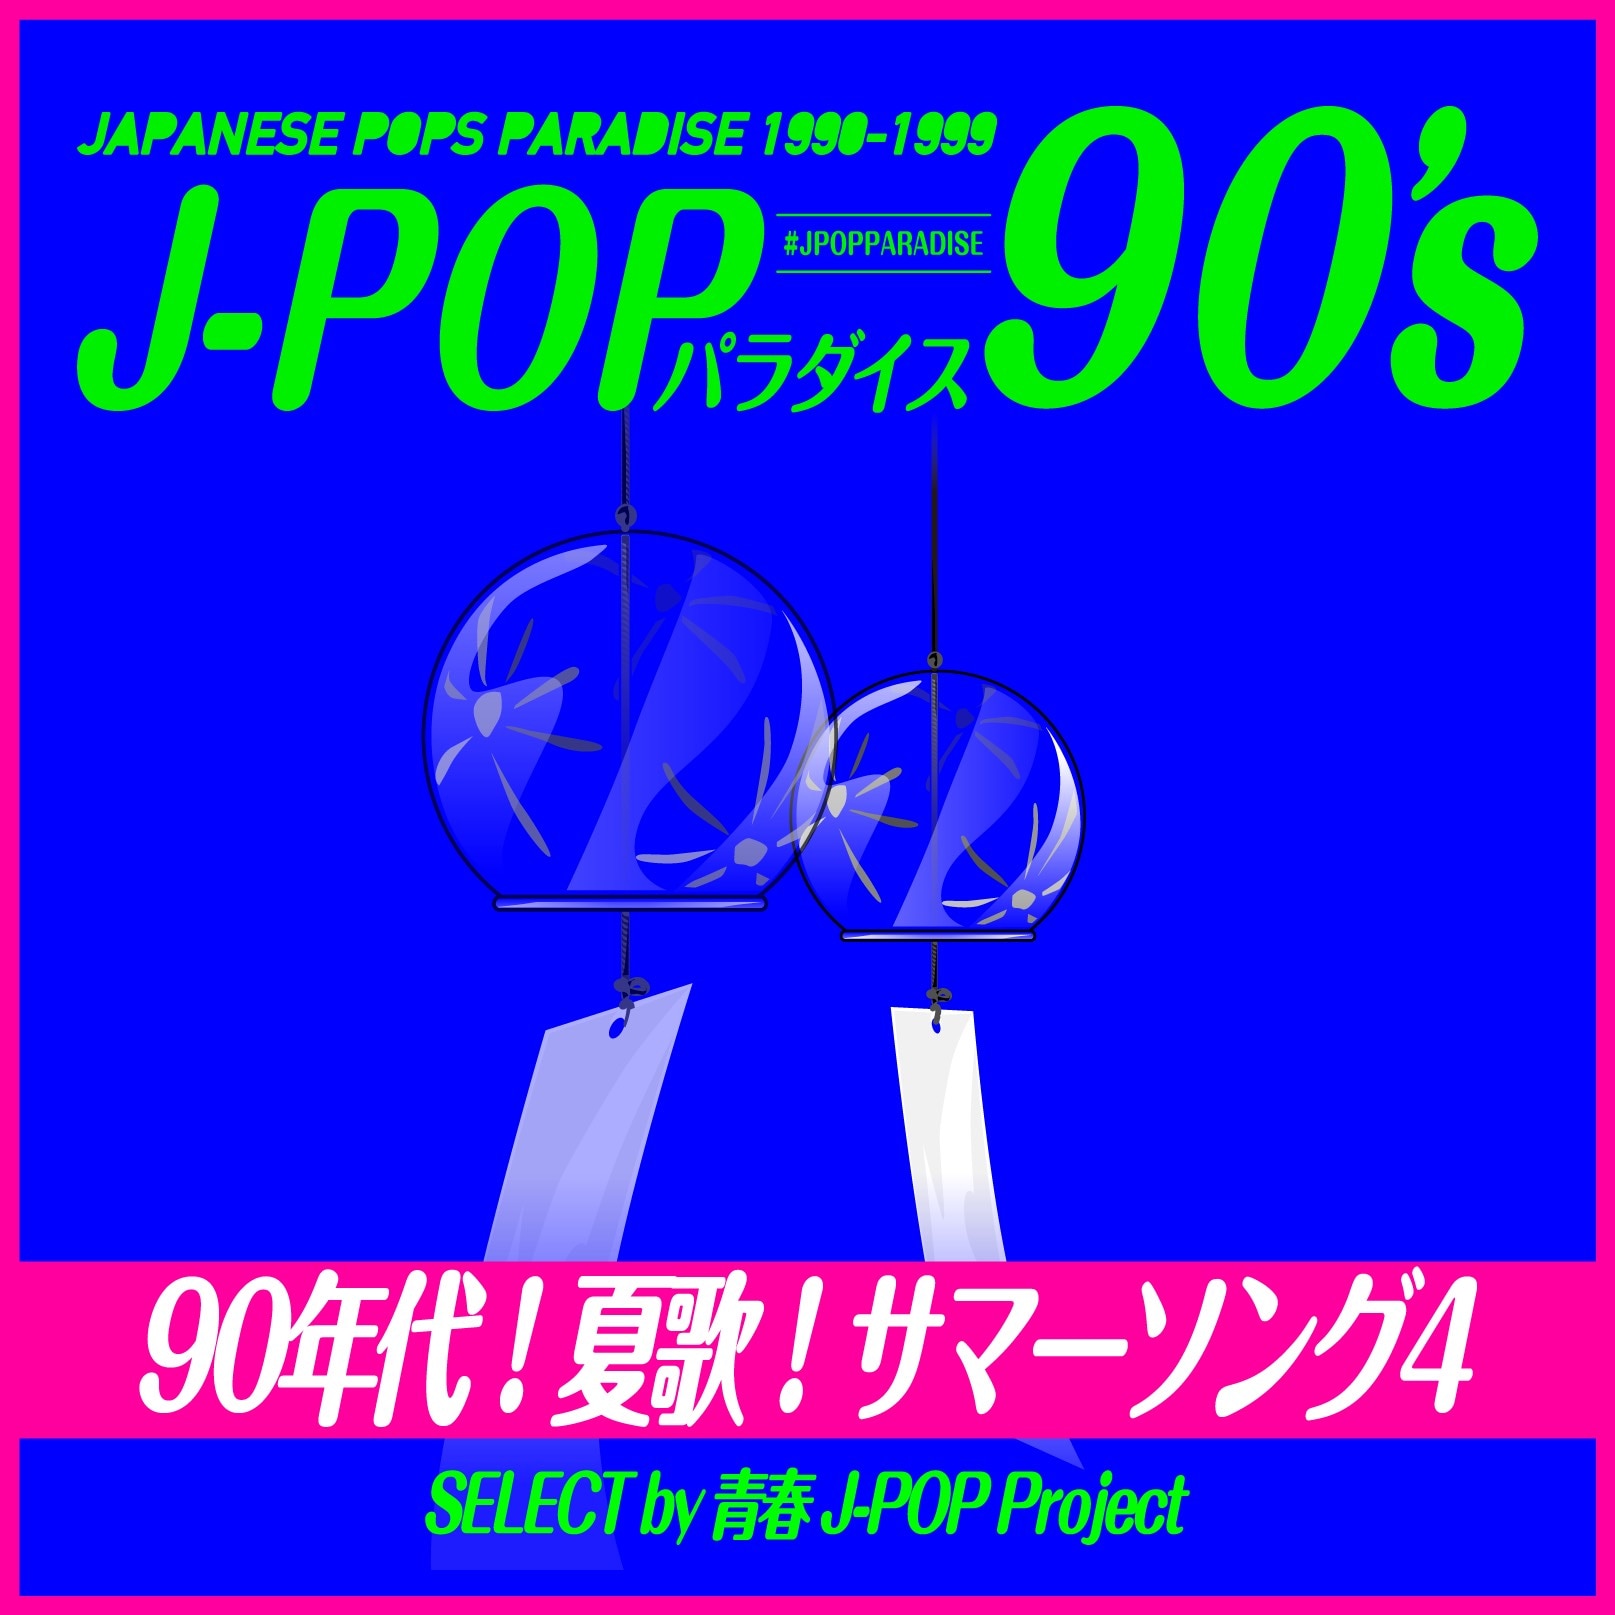 セール特集 CD オムニバス FM STATION 8090 ～GOOD OLD RADIO DAYS～ DAYTIME CITYP 邦楽 